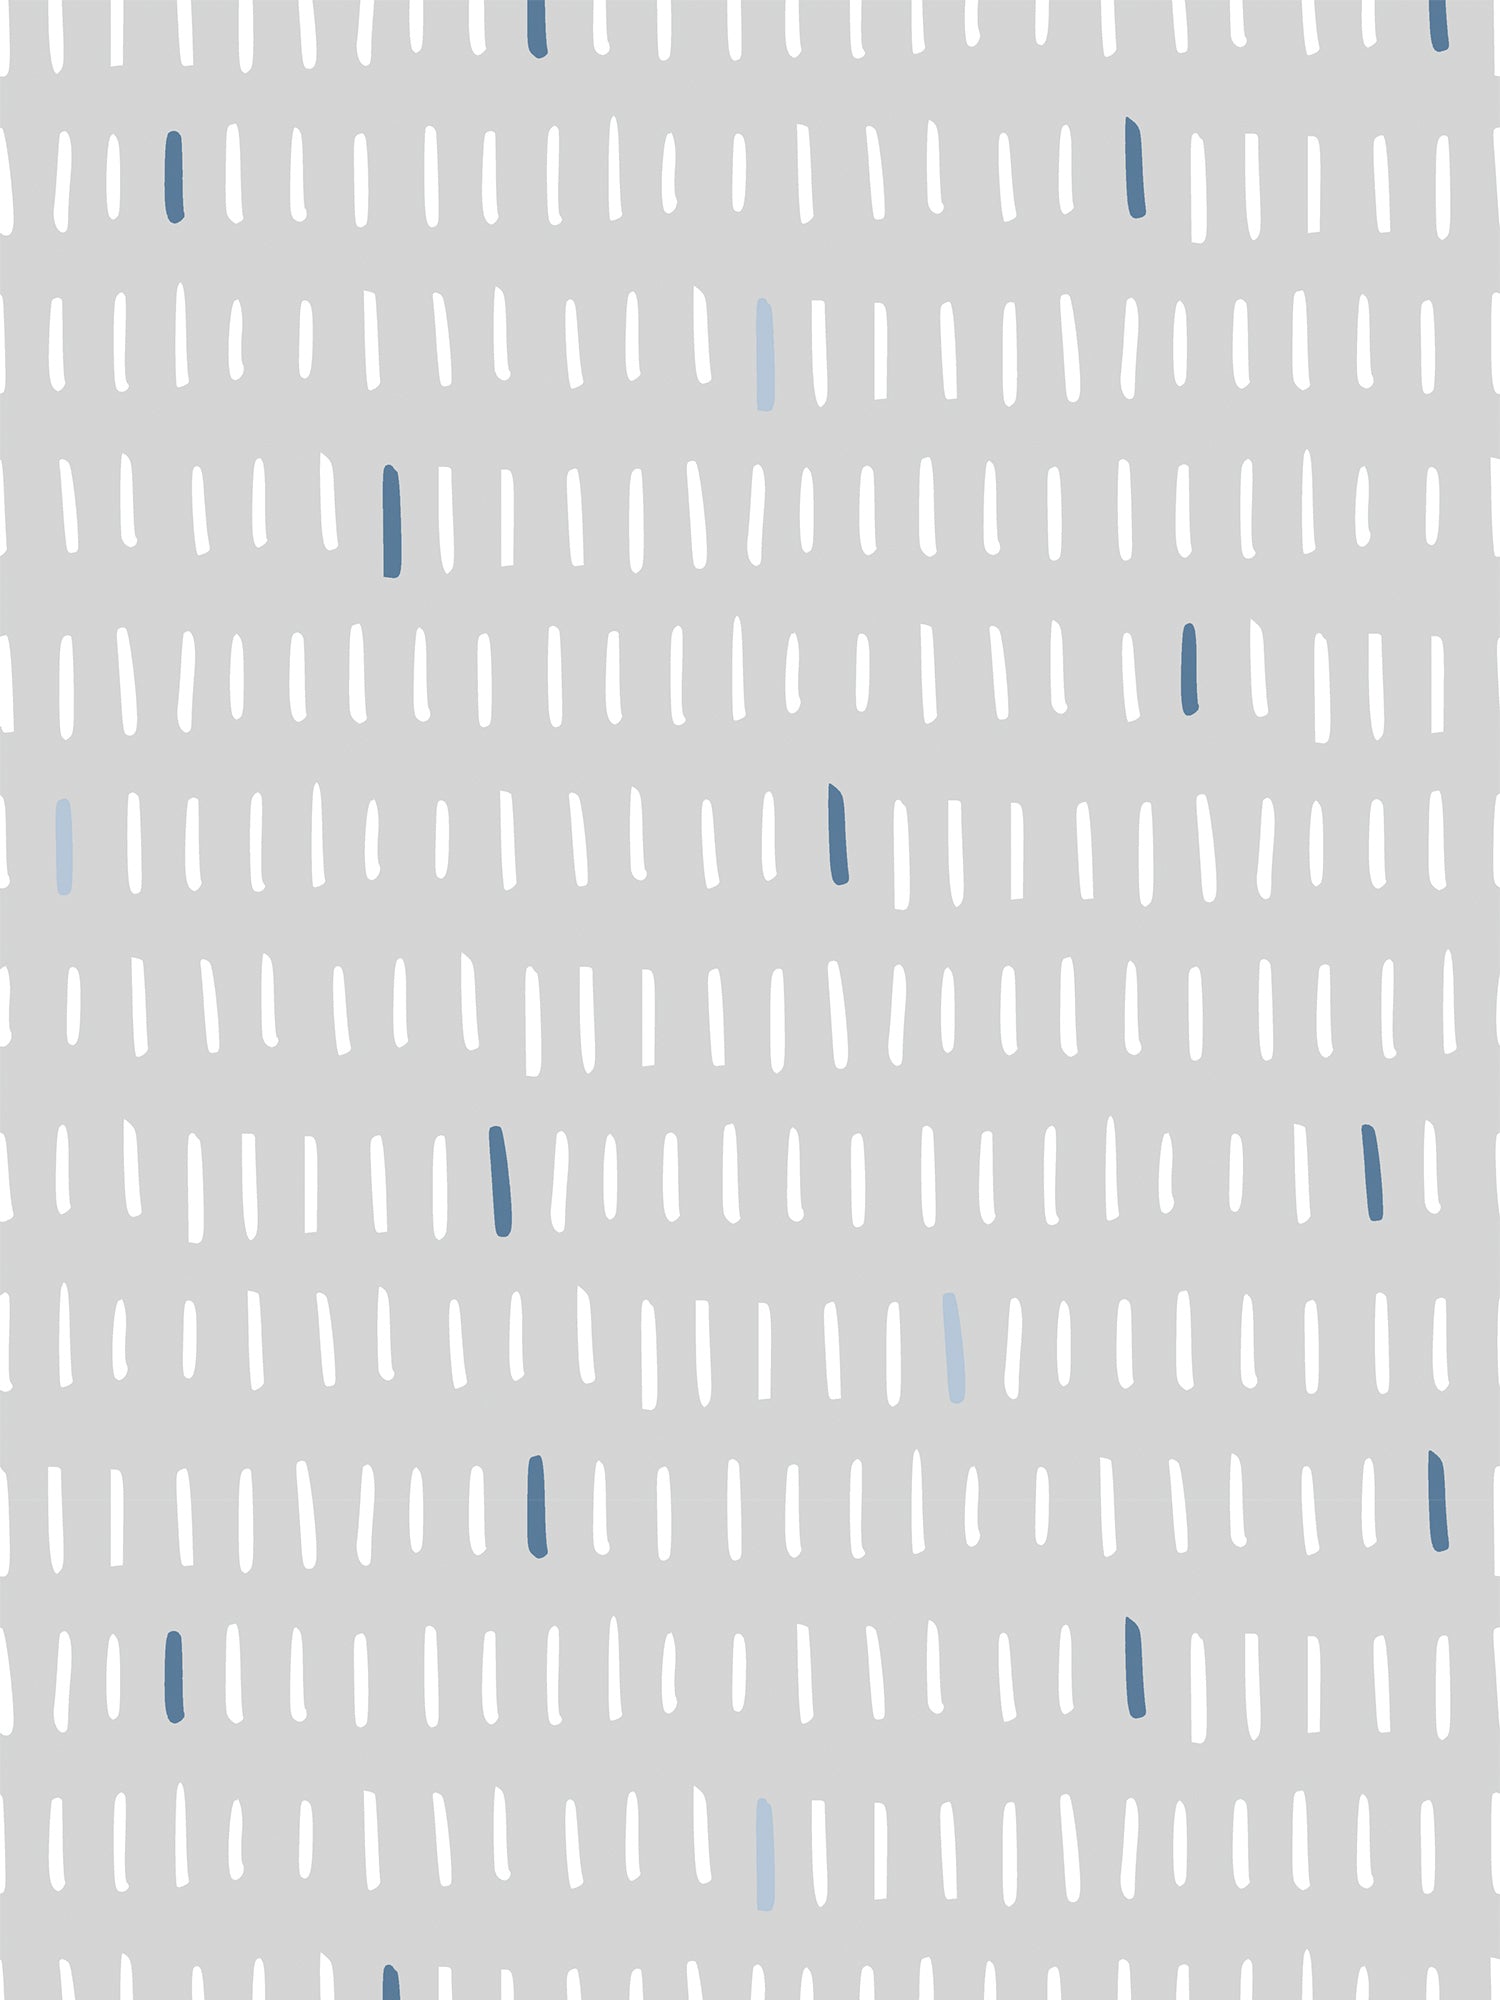 Lameller Azura Blue & Grey Vertical Lines Scandi Wallpaper Artwork by WallpaperMural